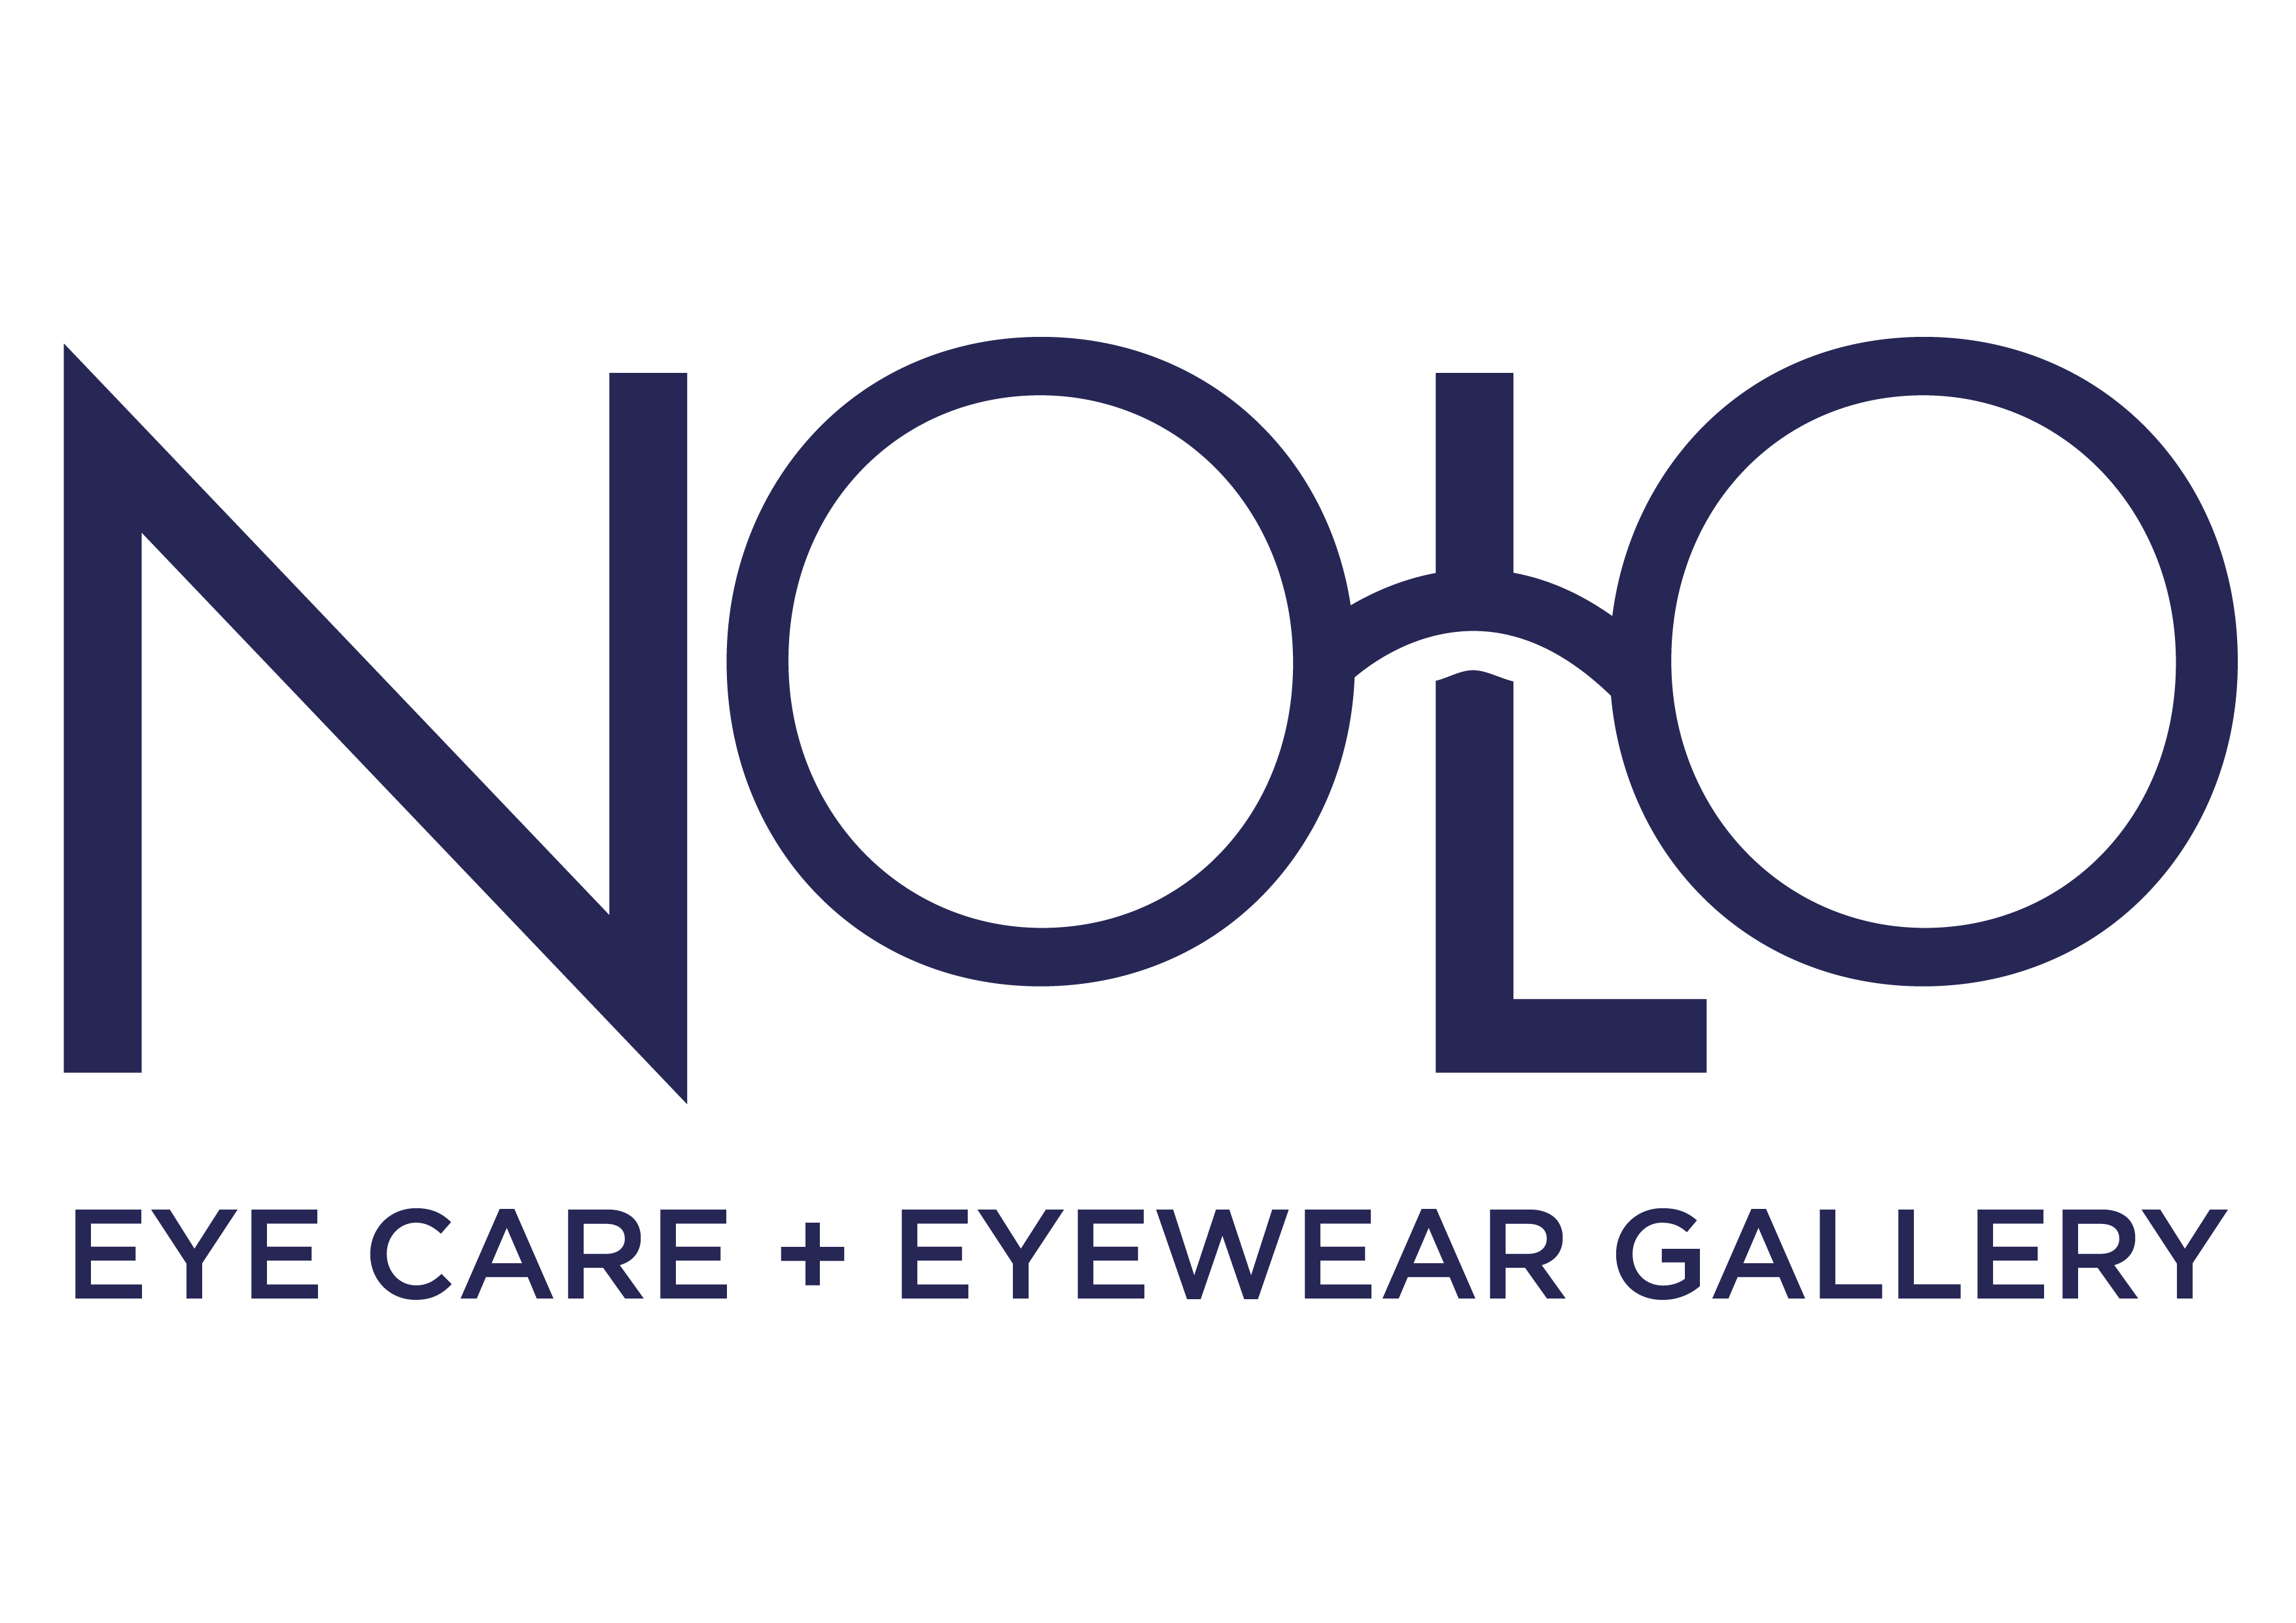 Nolo Eye Care + Eyewear Gallery